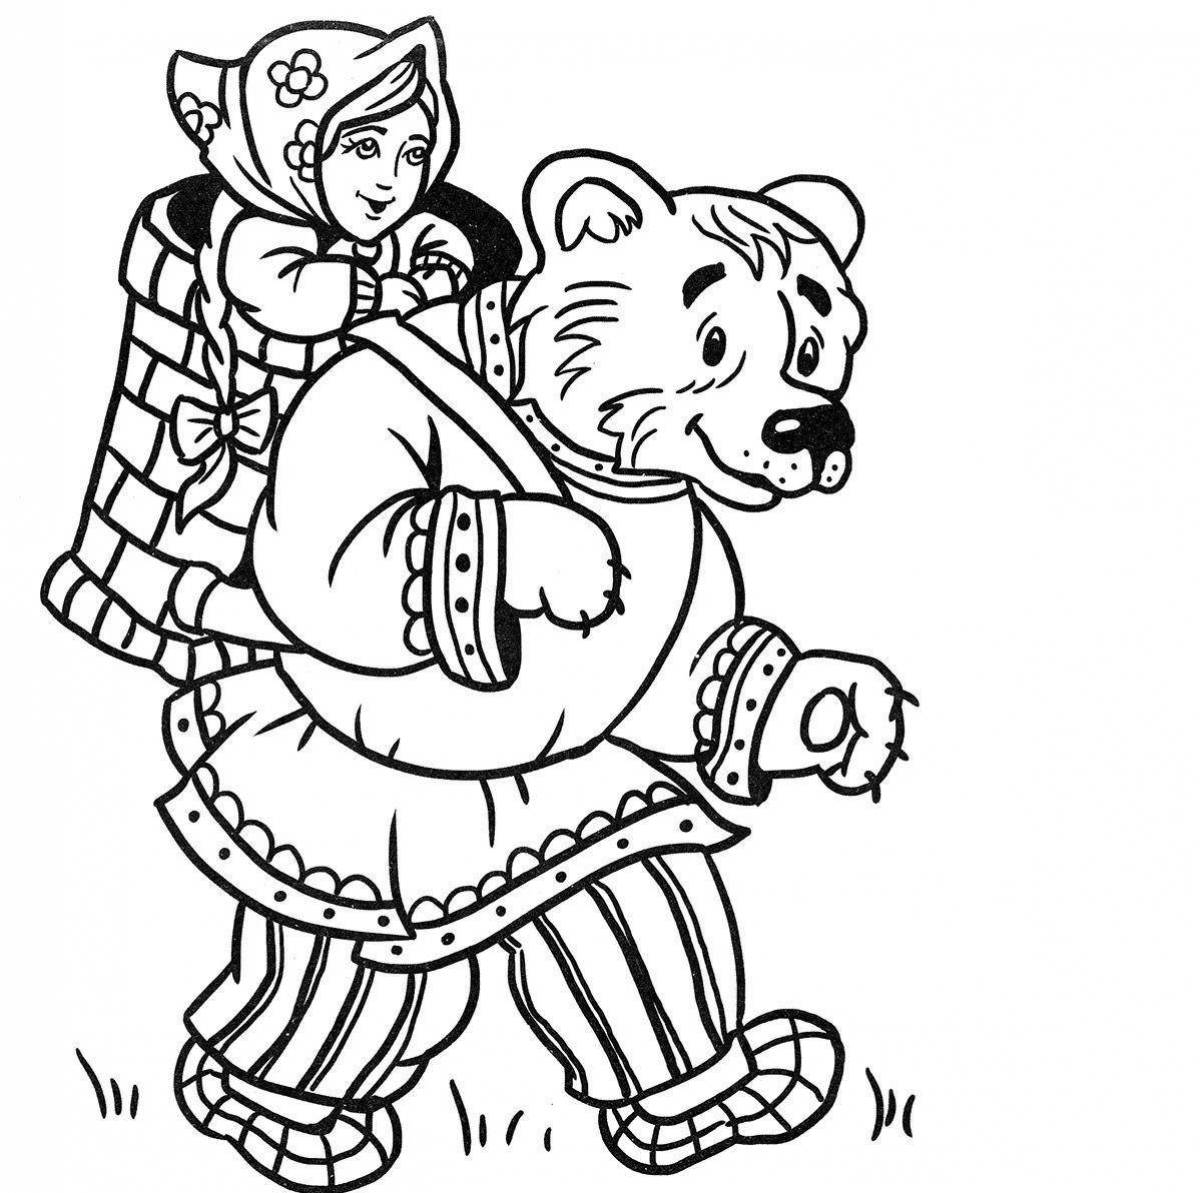 Three bears beckoning and masha coloring book